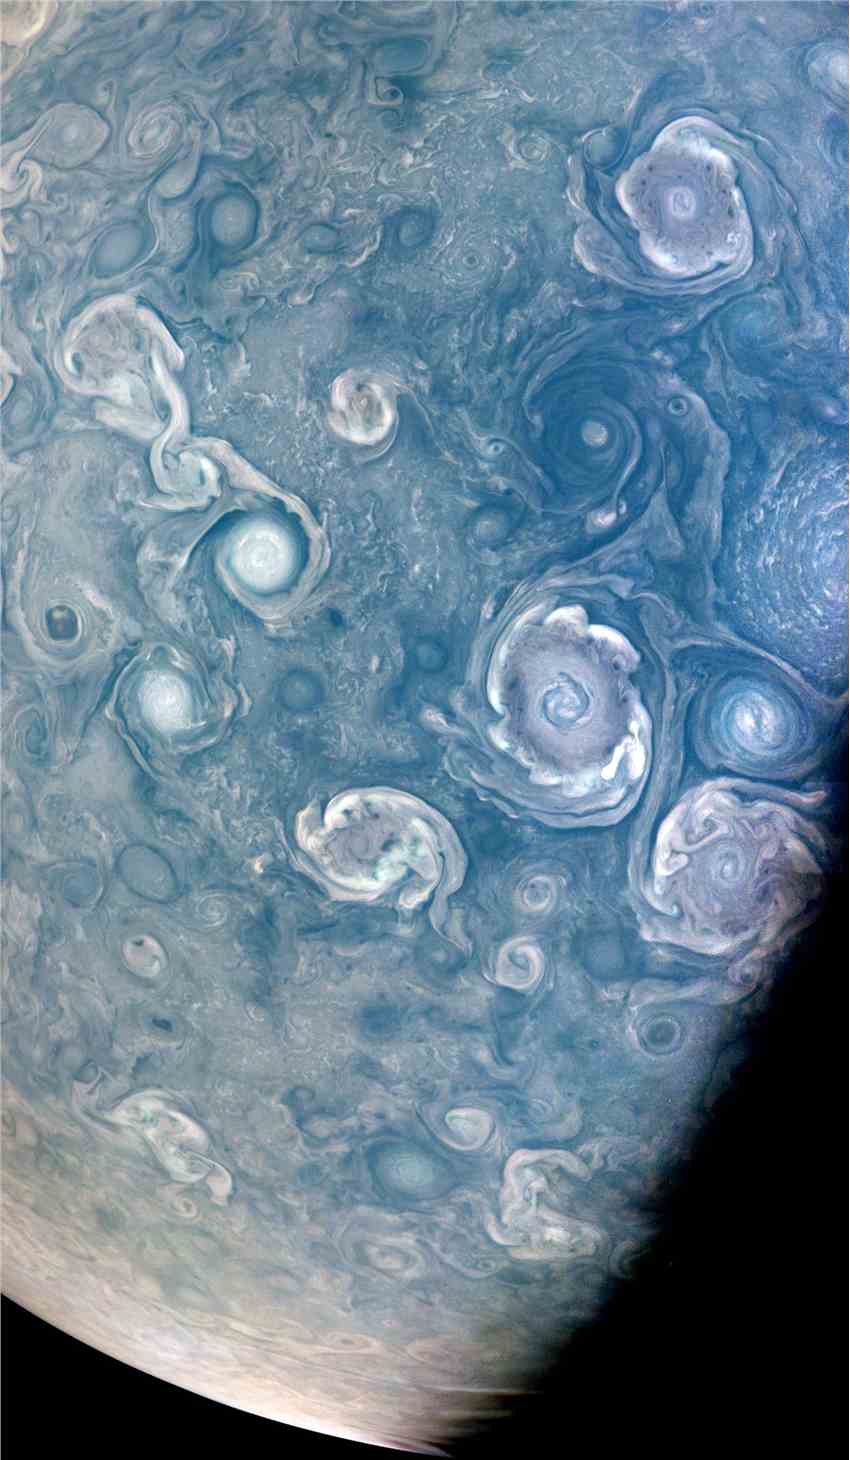 NASA朱诺号在木星北极附近捕捉到一个引人注目的旋涡